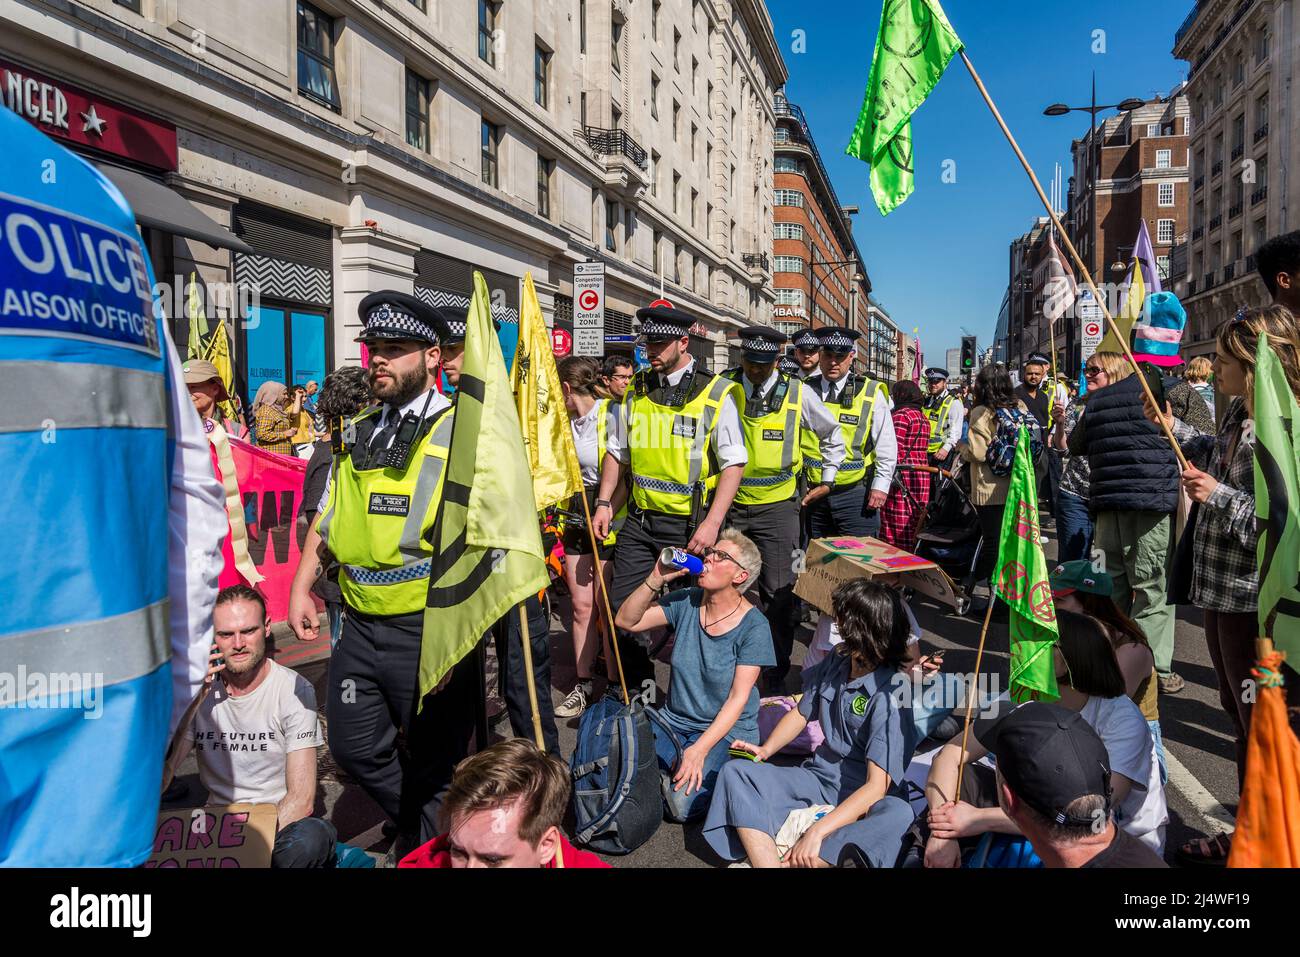 Non saremo spettatori, una protesta della ribellione di estinzione che combatte per la giustizia climatica, Marble Arch, Londra, Inghilterra, UK 16.04.2022 Foto Stock